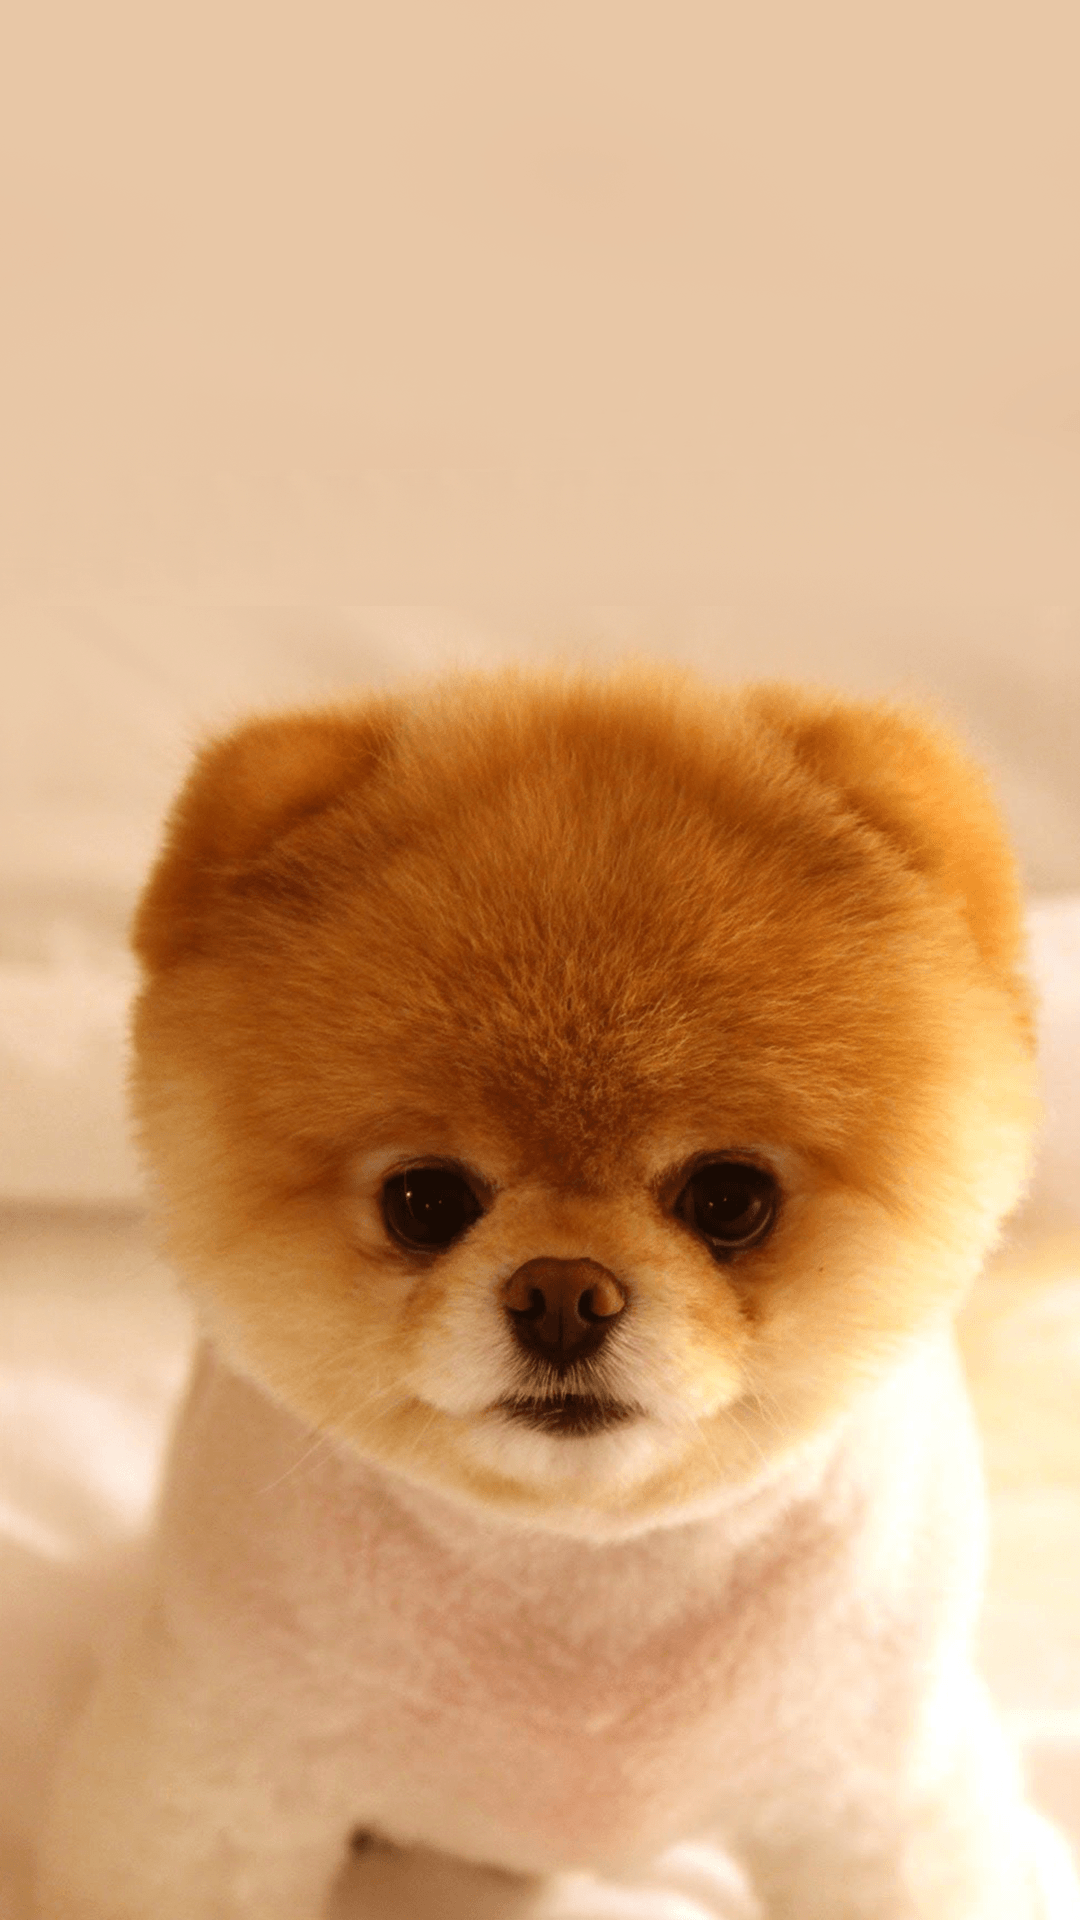 عکس جدید بچه سگ کیوت شبیه به خرس با کیفیت عالی